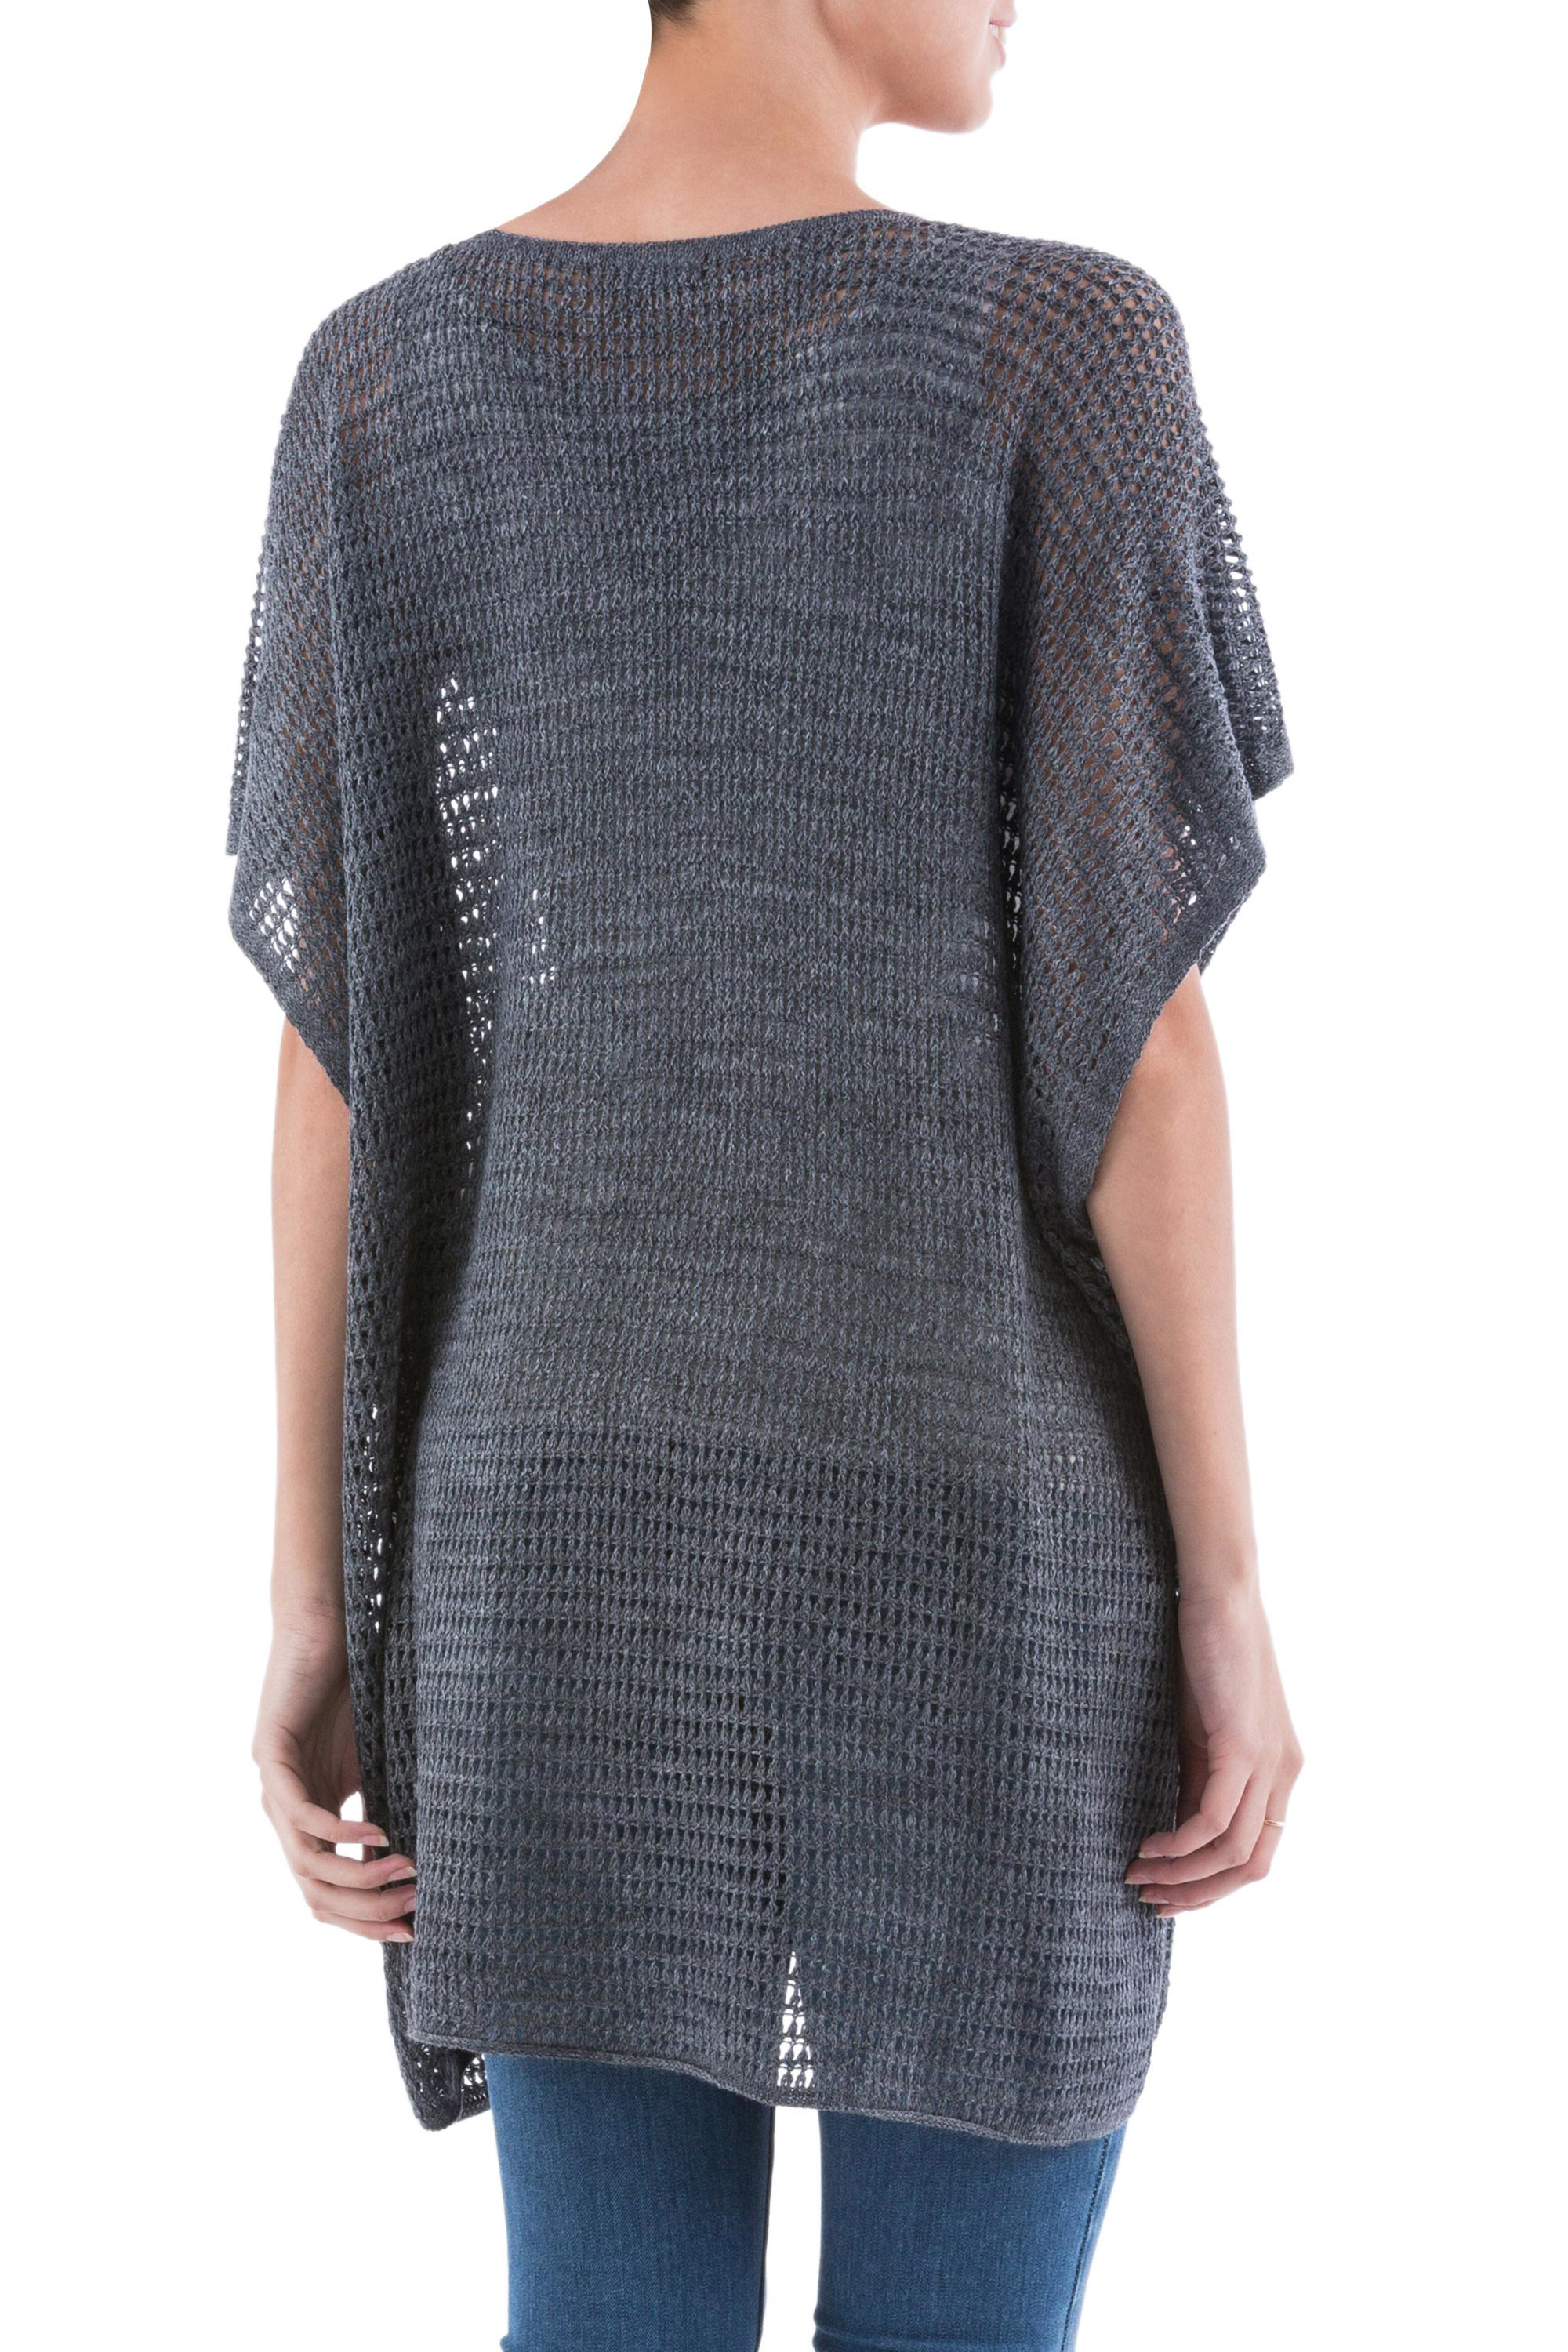 Grey Short Sleeve V Neck Tunic from Peru - Grey Dreamcatcher | NOVICA